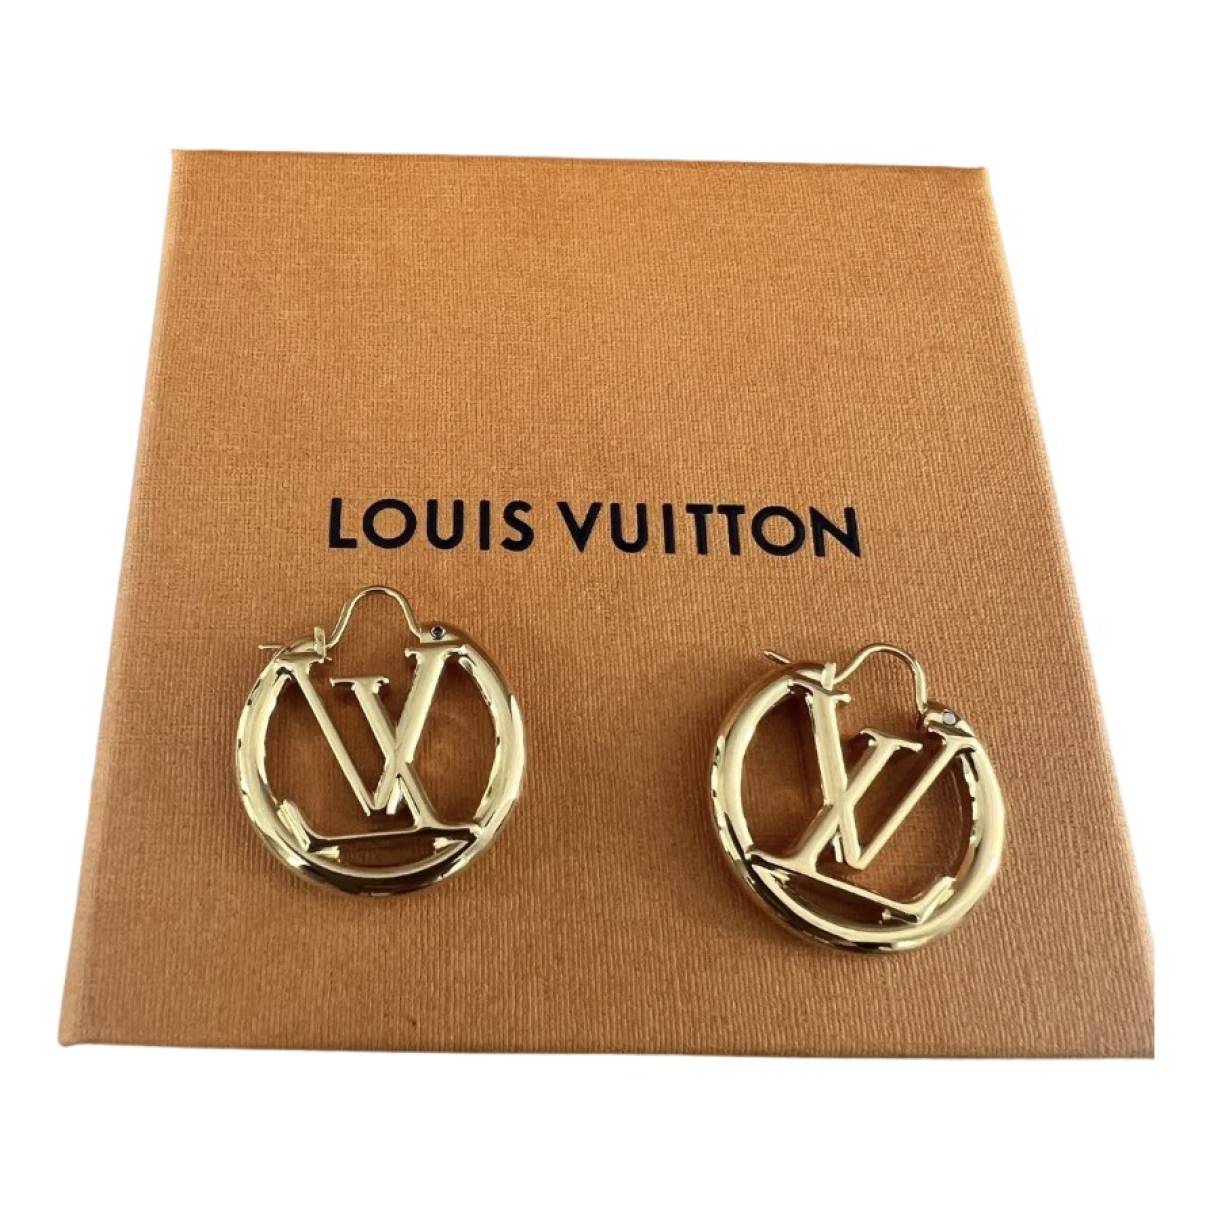 Louise earrings Louis Vuitton Gold in Metal - 31929574